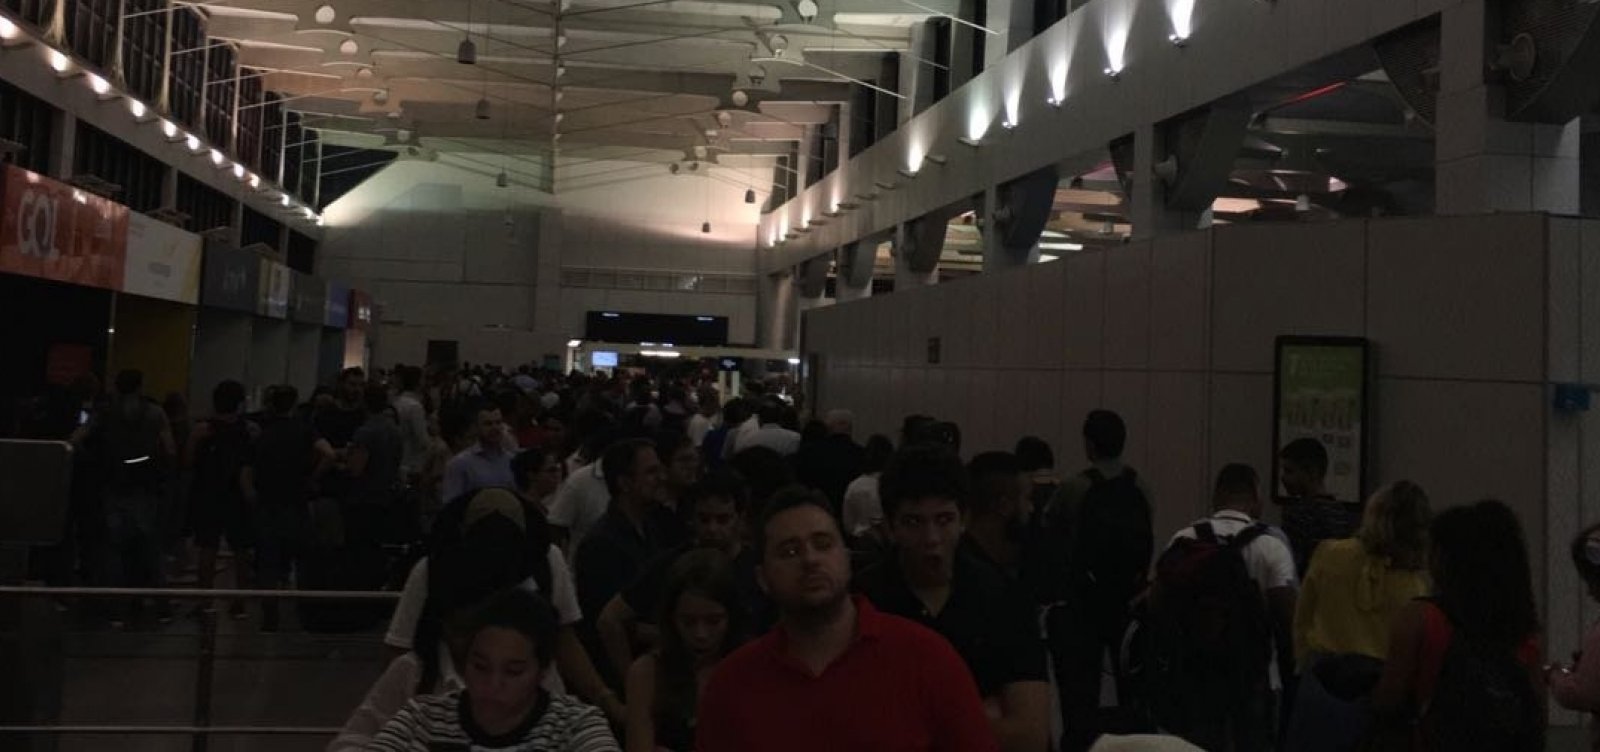 Aeroporto de Salvador fica sem energia e voos atrasam